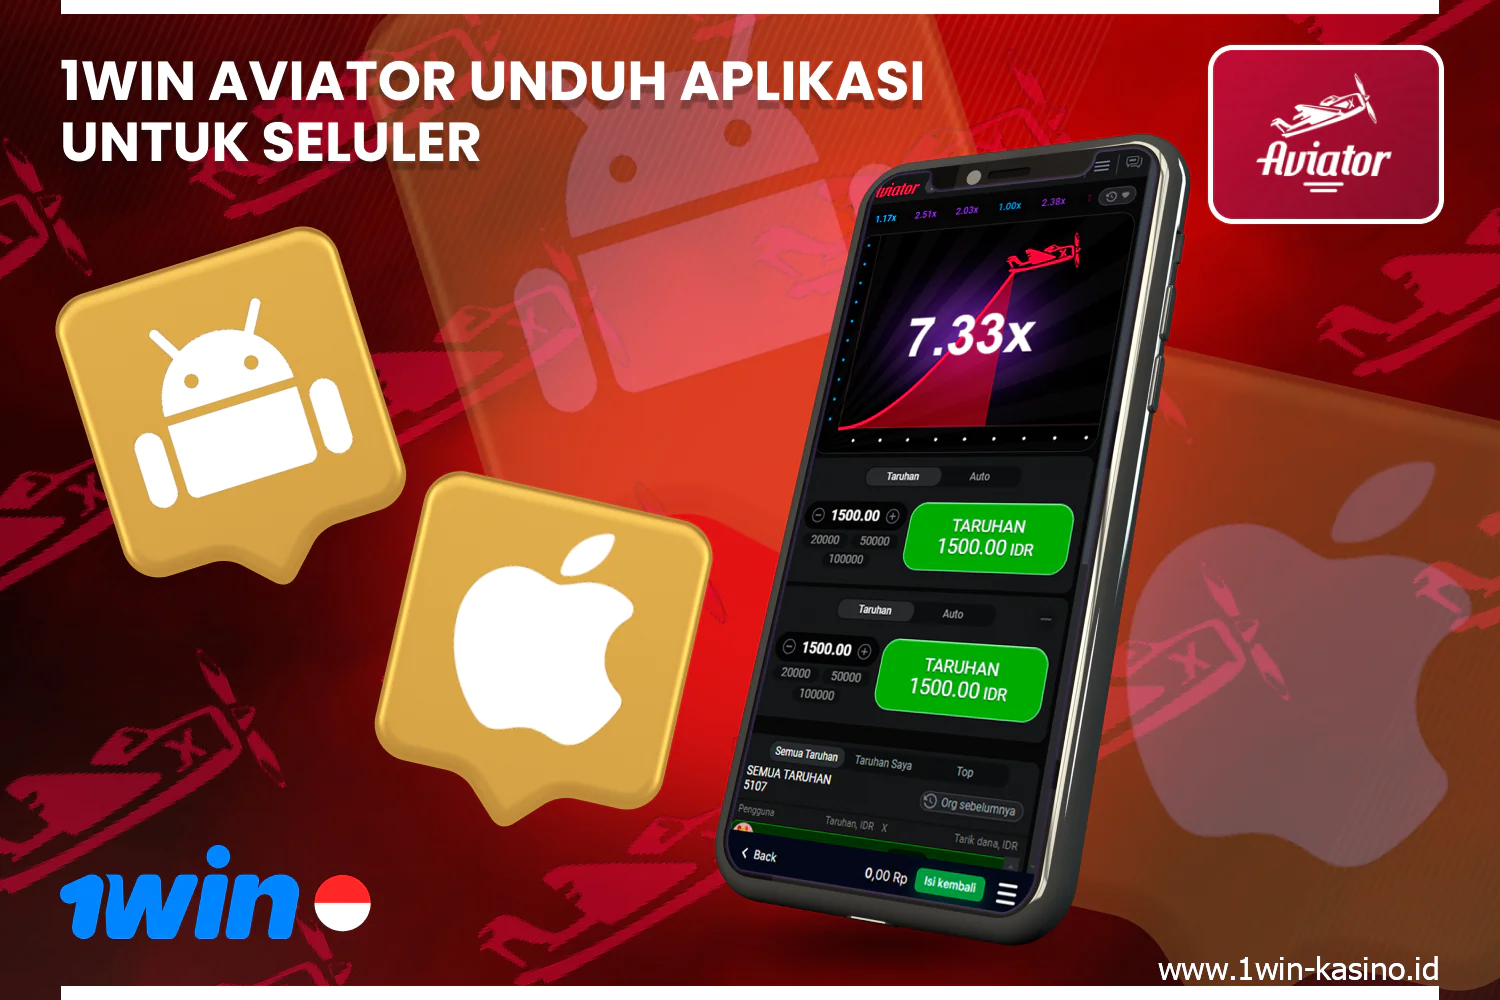 Unduh aplikasi seluler gratis untuk Android atau iOS untuk memainkan 1win Aviator dengan uang sungguhan dan dalam mode demo di mana saja